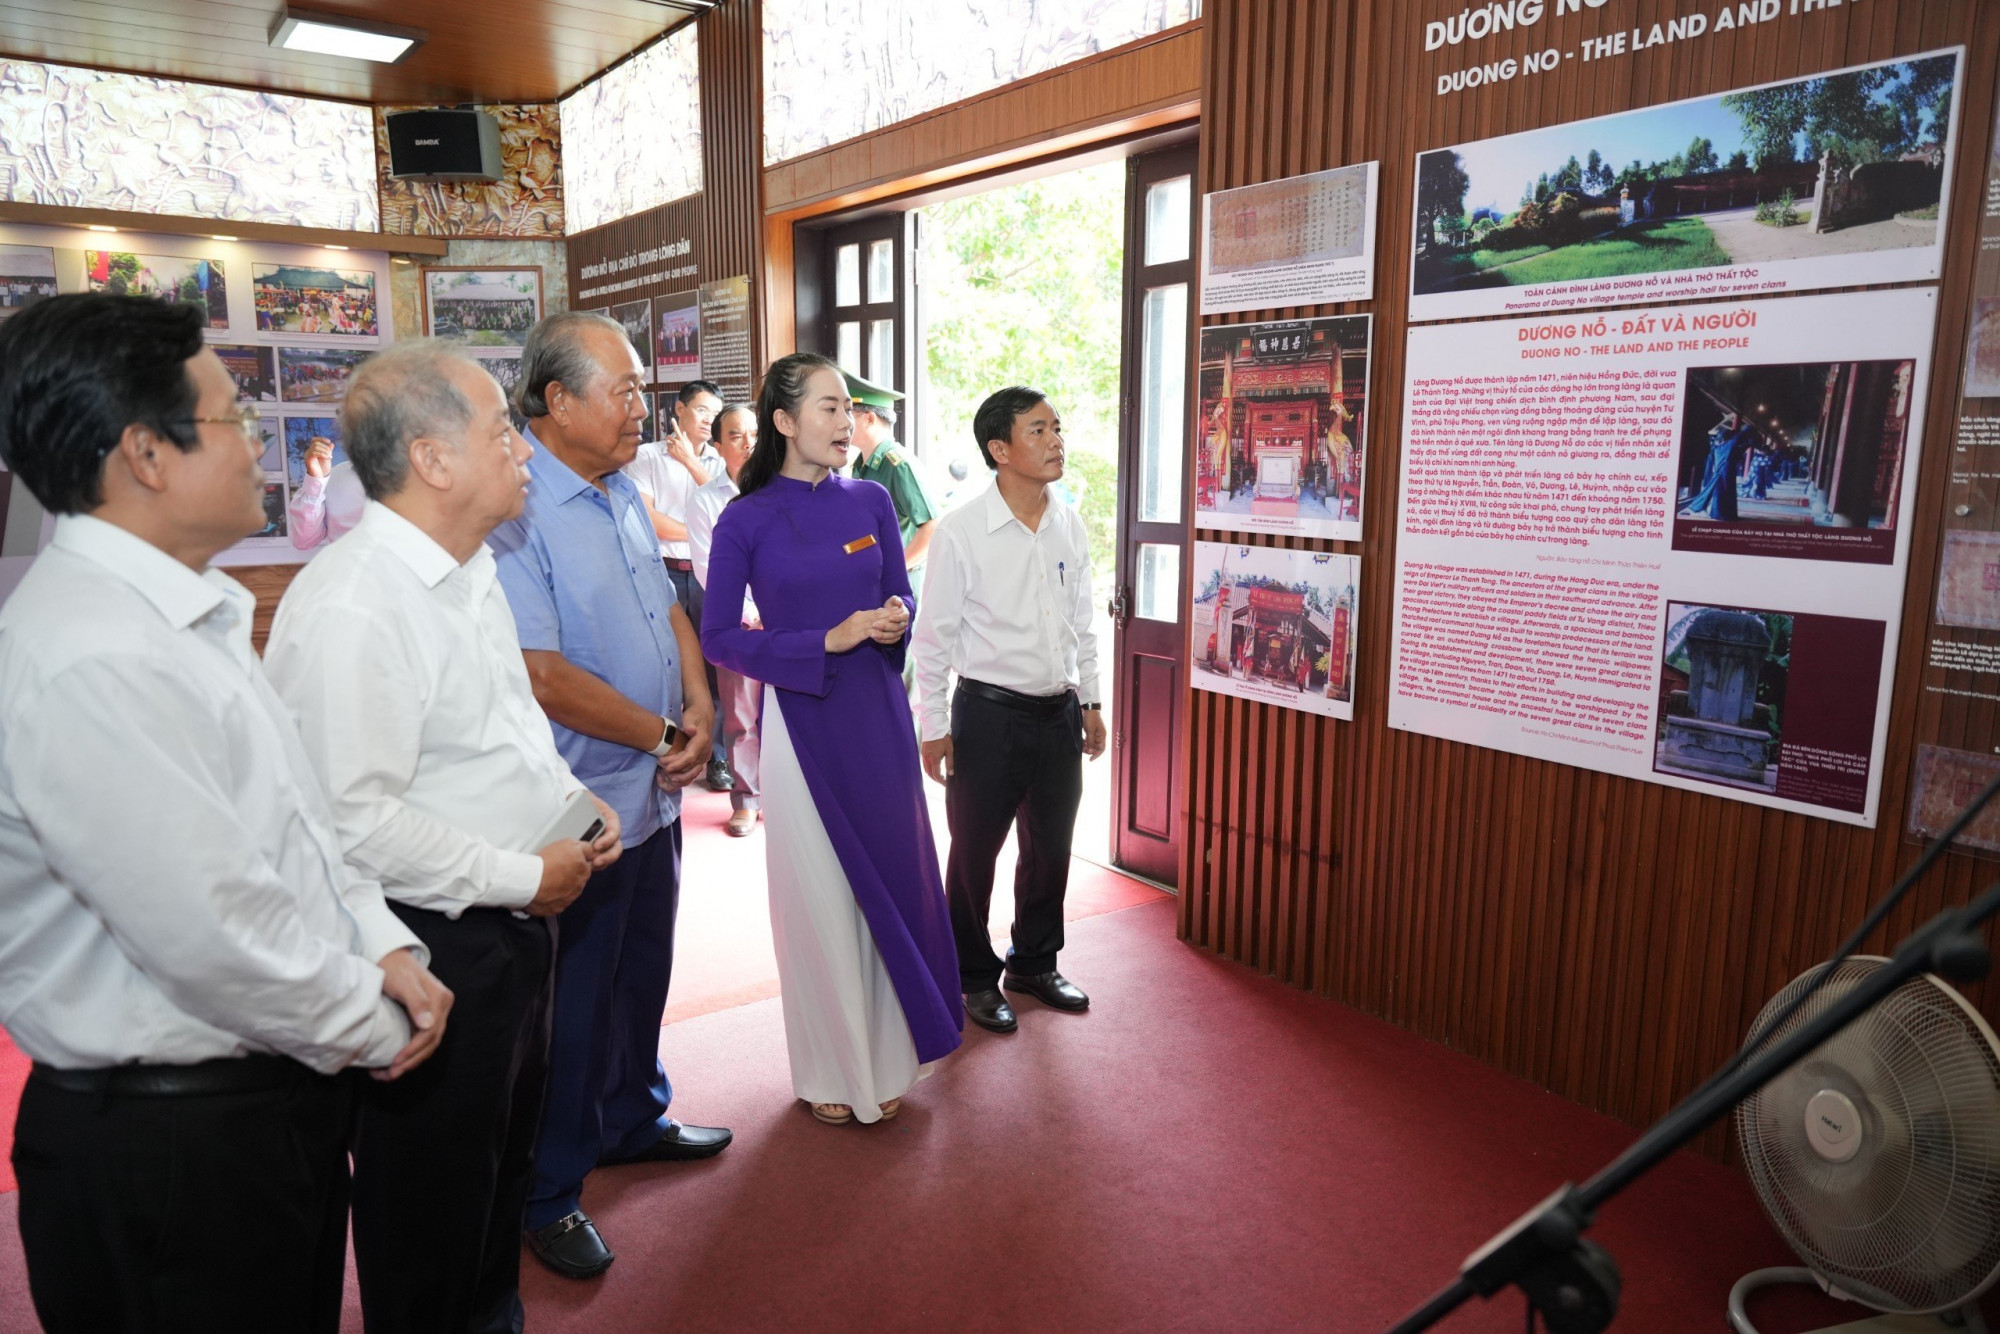 Nguyên Phó Thủ tướng Thường trực Chính phủ Trương Hòa Bình thăm làng Dương Nổ nơi ghi dấu ấn tuổi thơ Bác Hồ cùng gia đình sinh sống tại đây